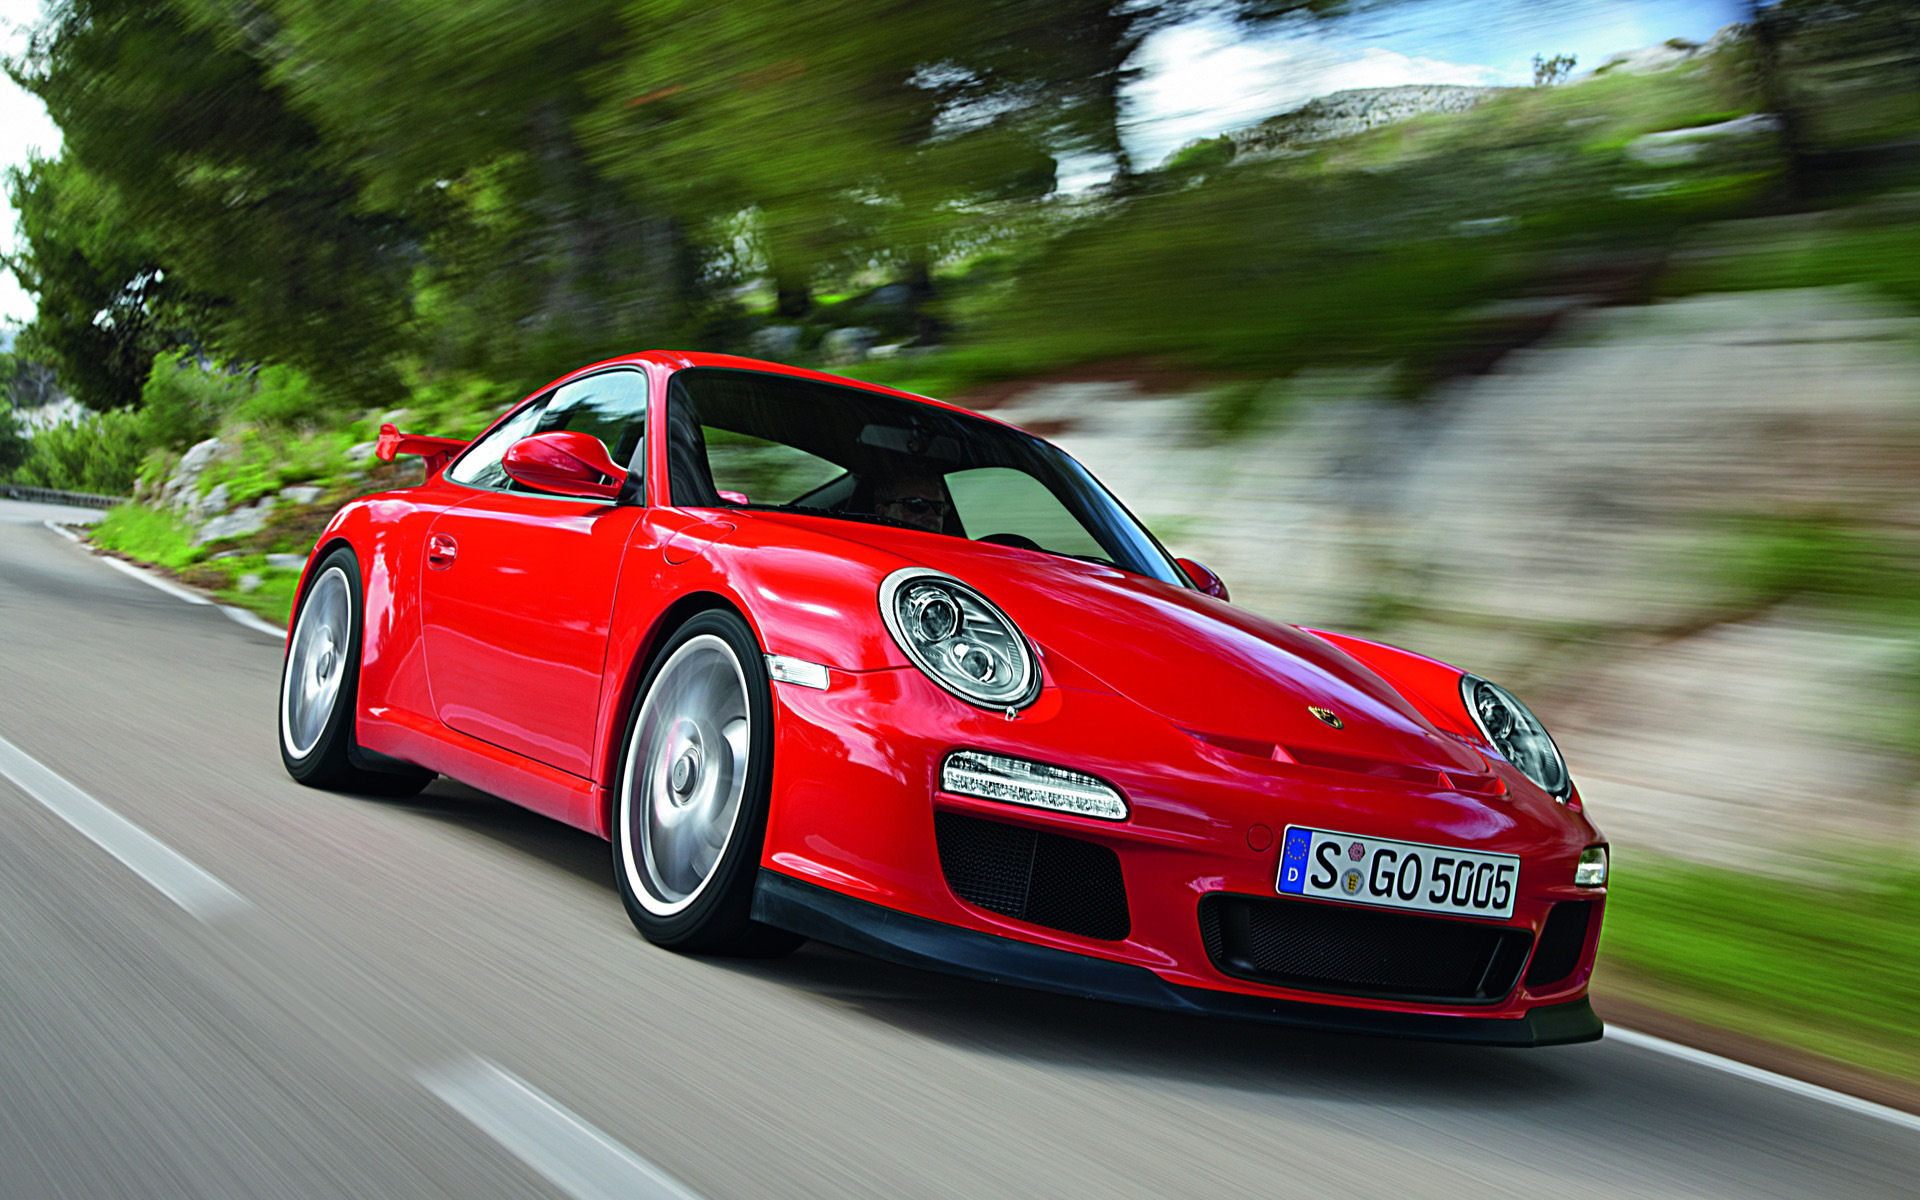 Porsche 911 Desktop Wallpaper - Porsche 911 Turbo Red 4k - HD Wallpaper 